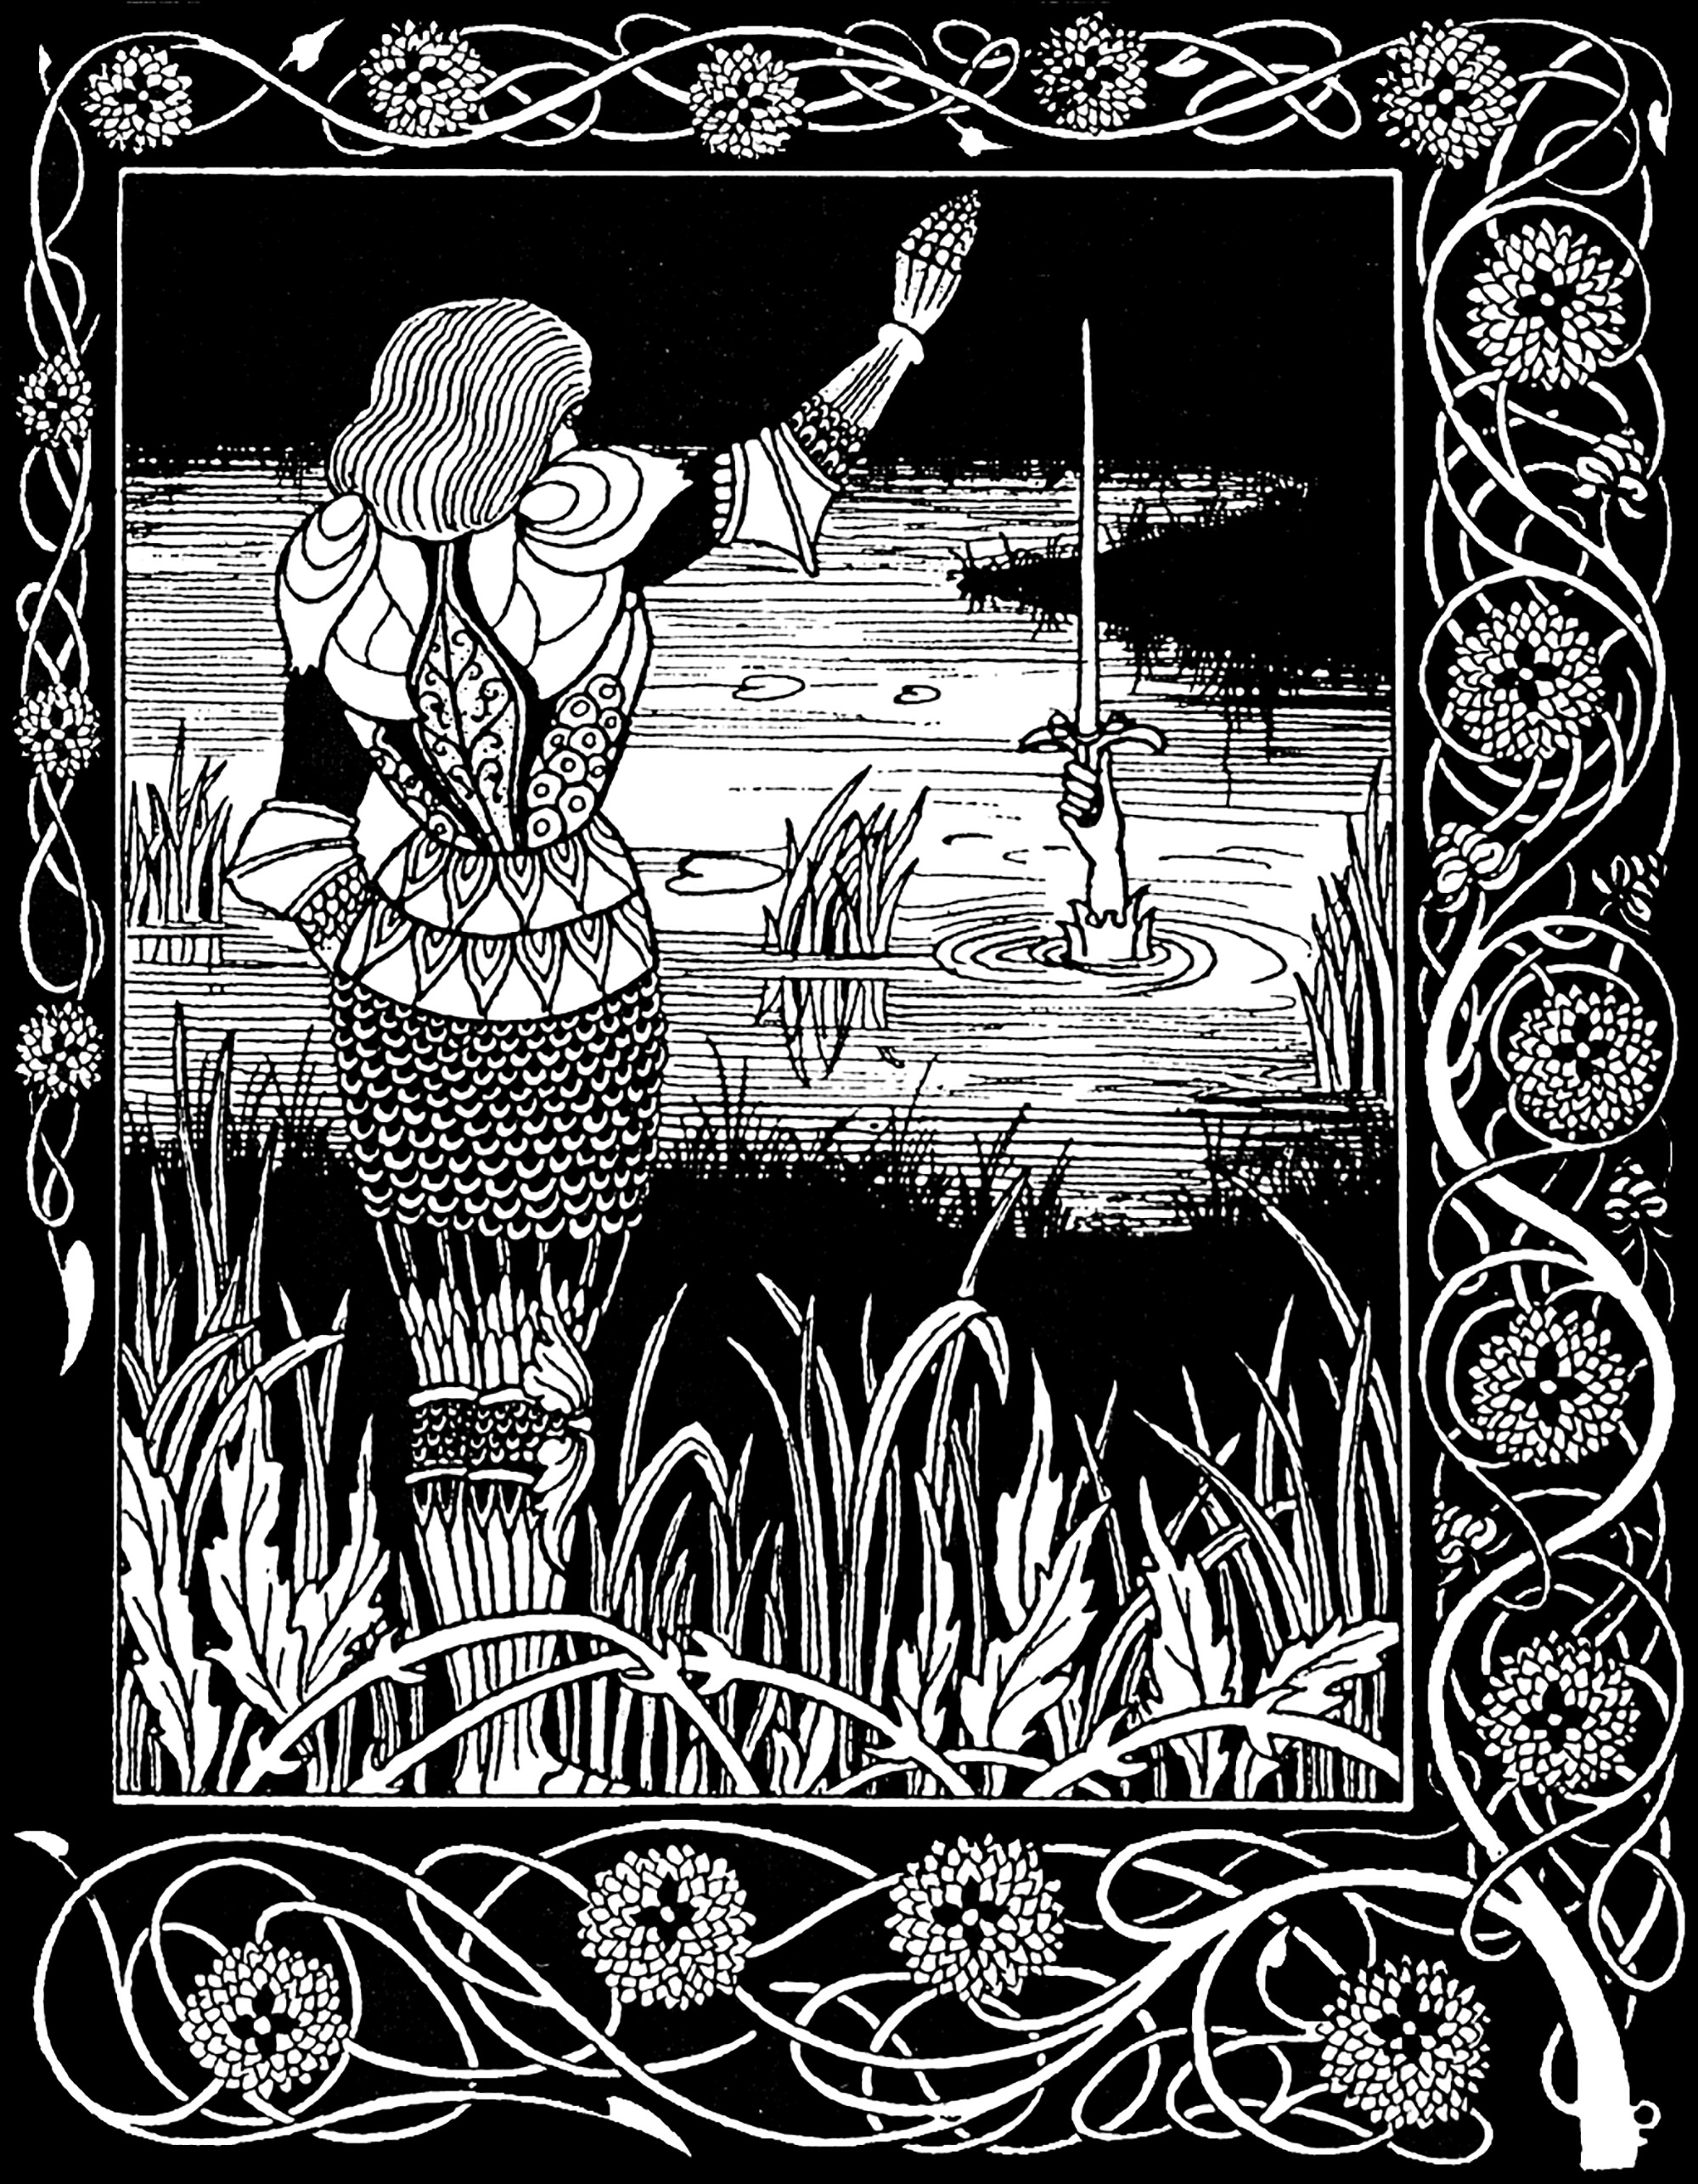 Sir Bedivere getta Excalibur, la spada di Artù, nel lago da cui proviene. Illustrazione di Aubrey Beardsley (1872-1898) per un'edizione de La Mort d'Arthur di Sir Thomas Malory (1893).